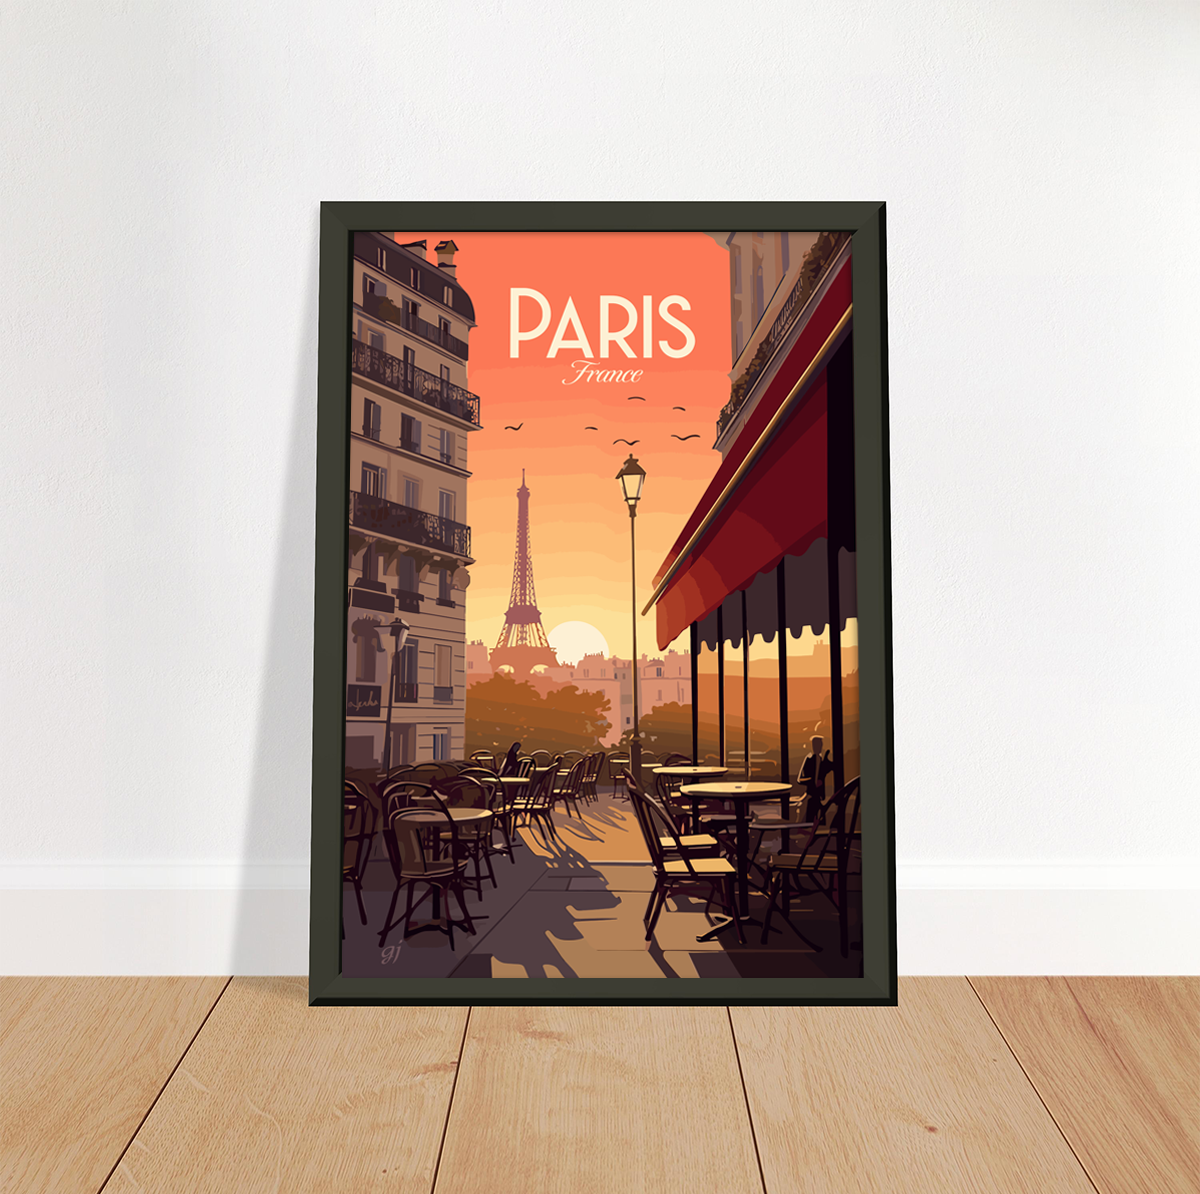 Paris - Café poster by bon voyage design